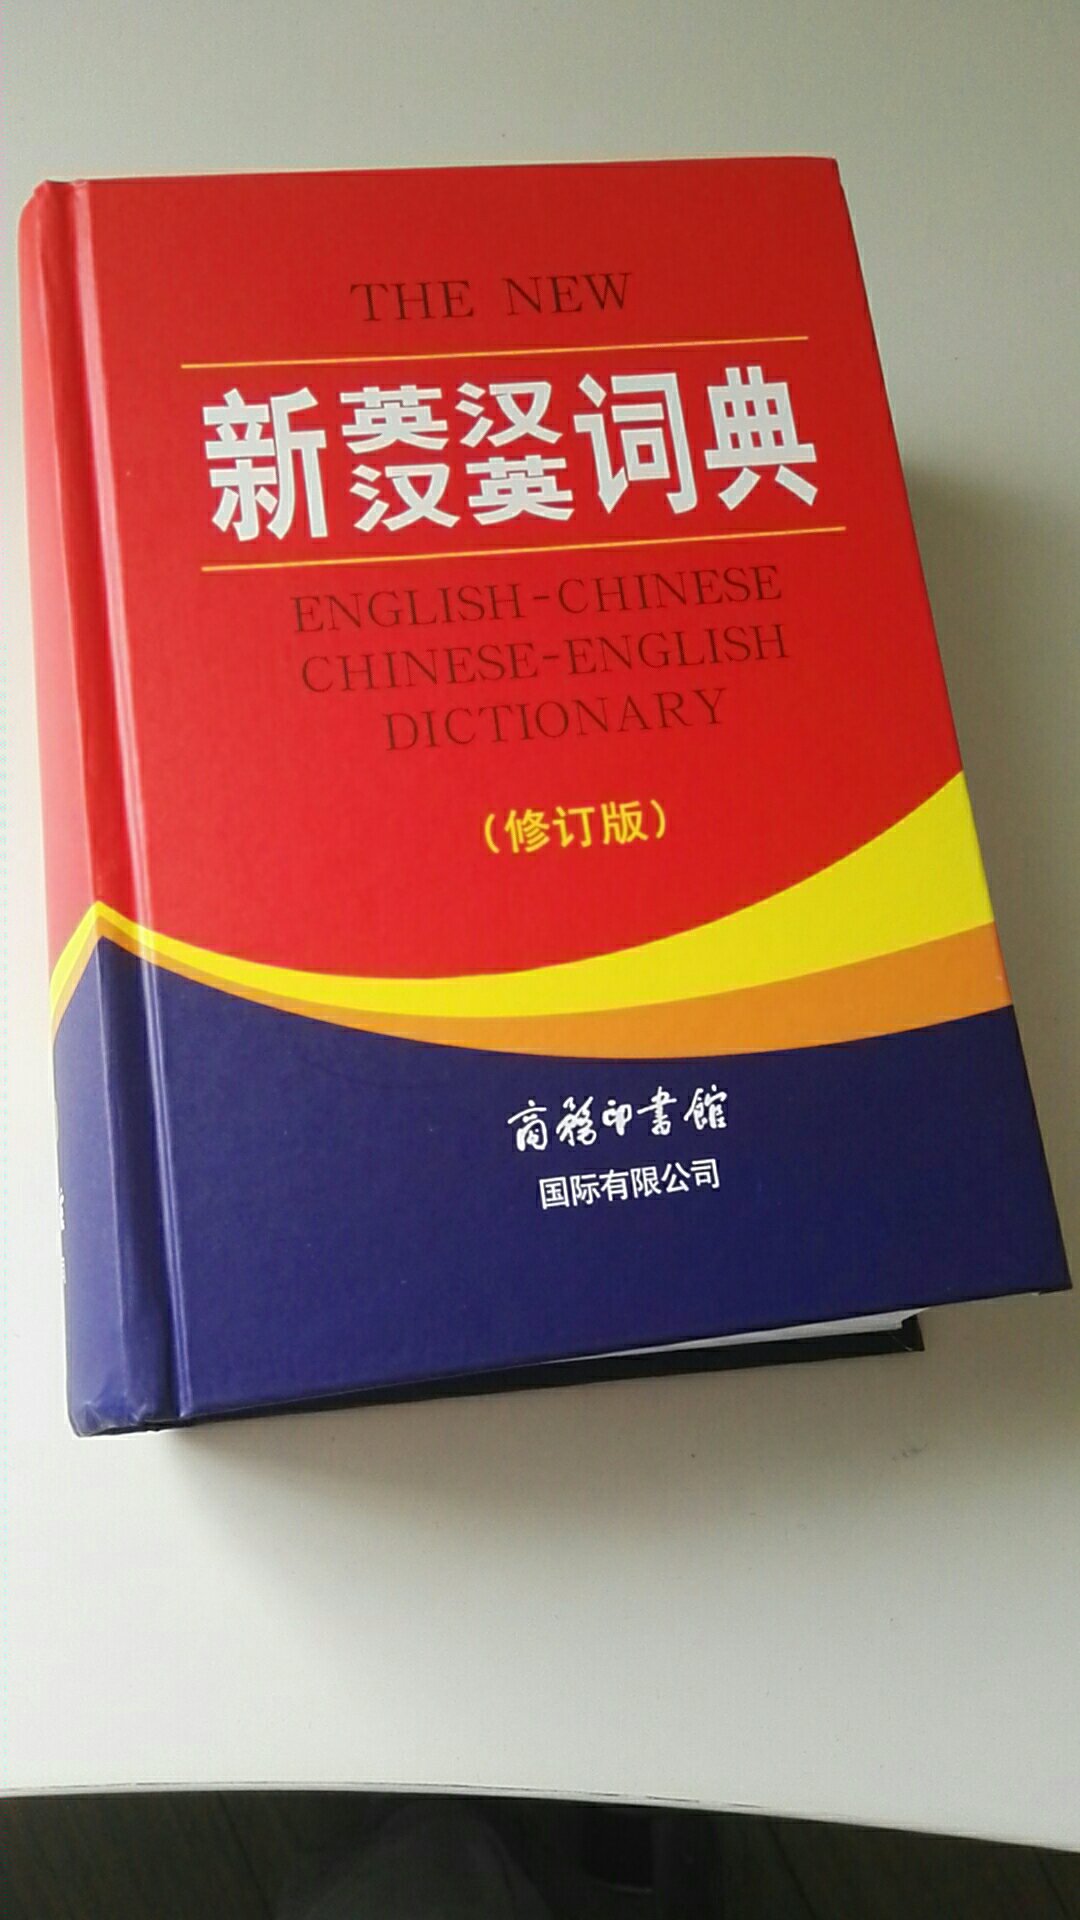 正版图书，质量很好，内容全面，非常适合中学生，英语学习必备工具书。